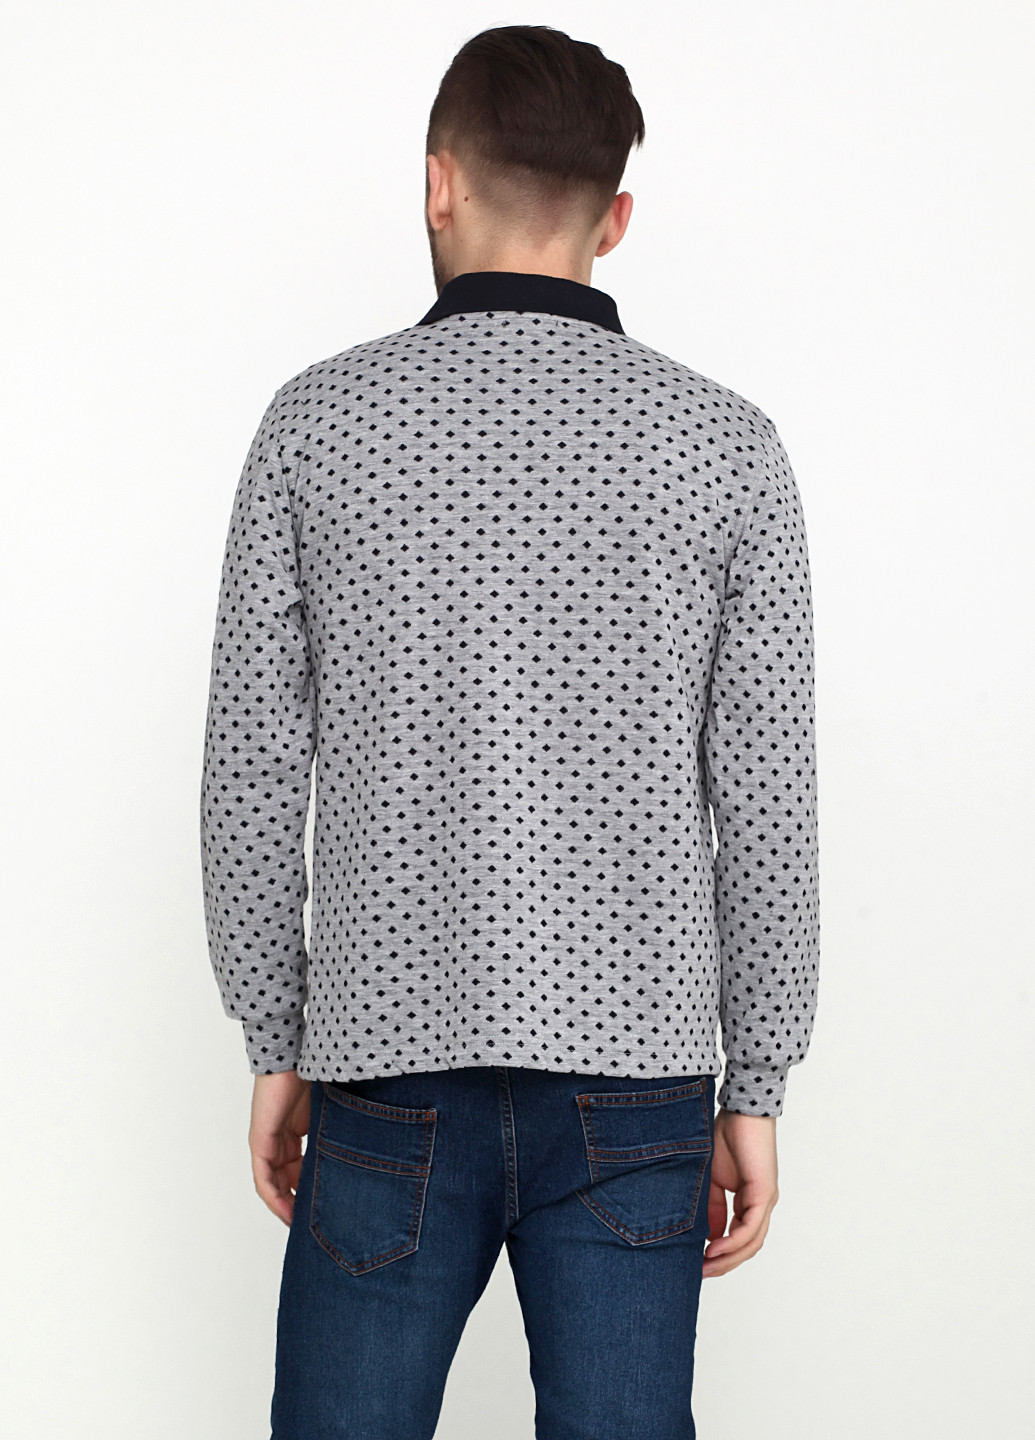 Серая футболка-поло для мужчин Clartex с геометрическим узором